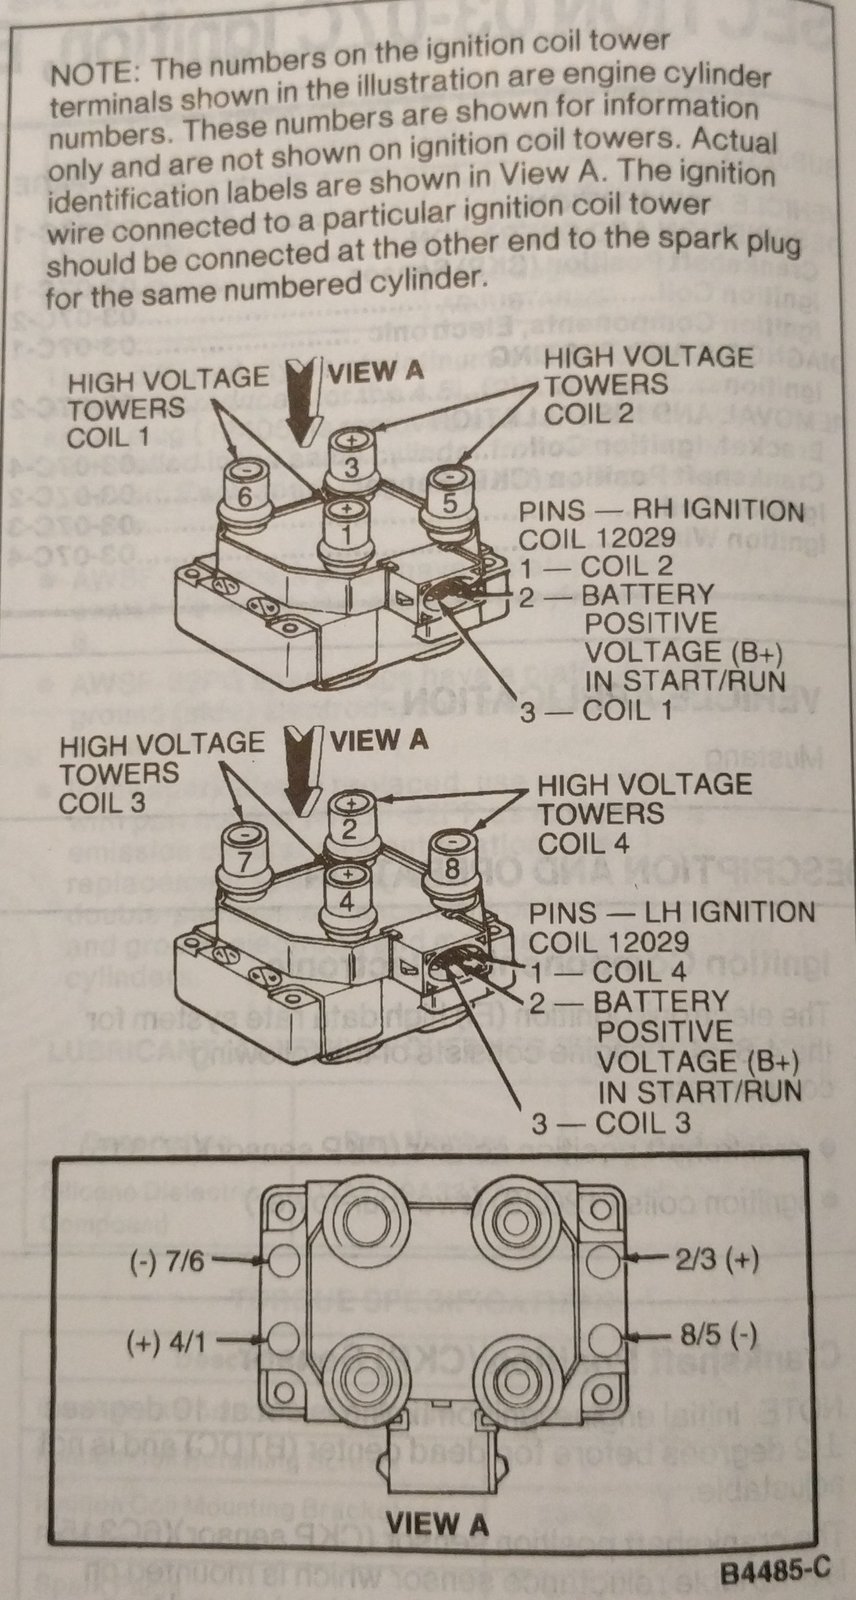 4V ignition coil packs.jpg